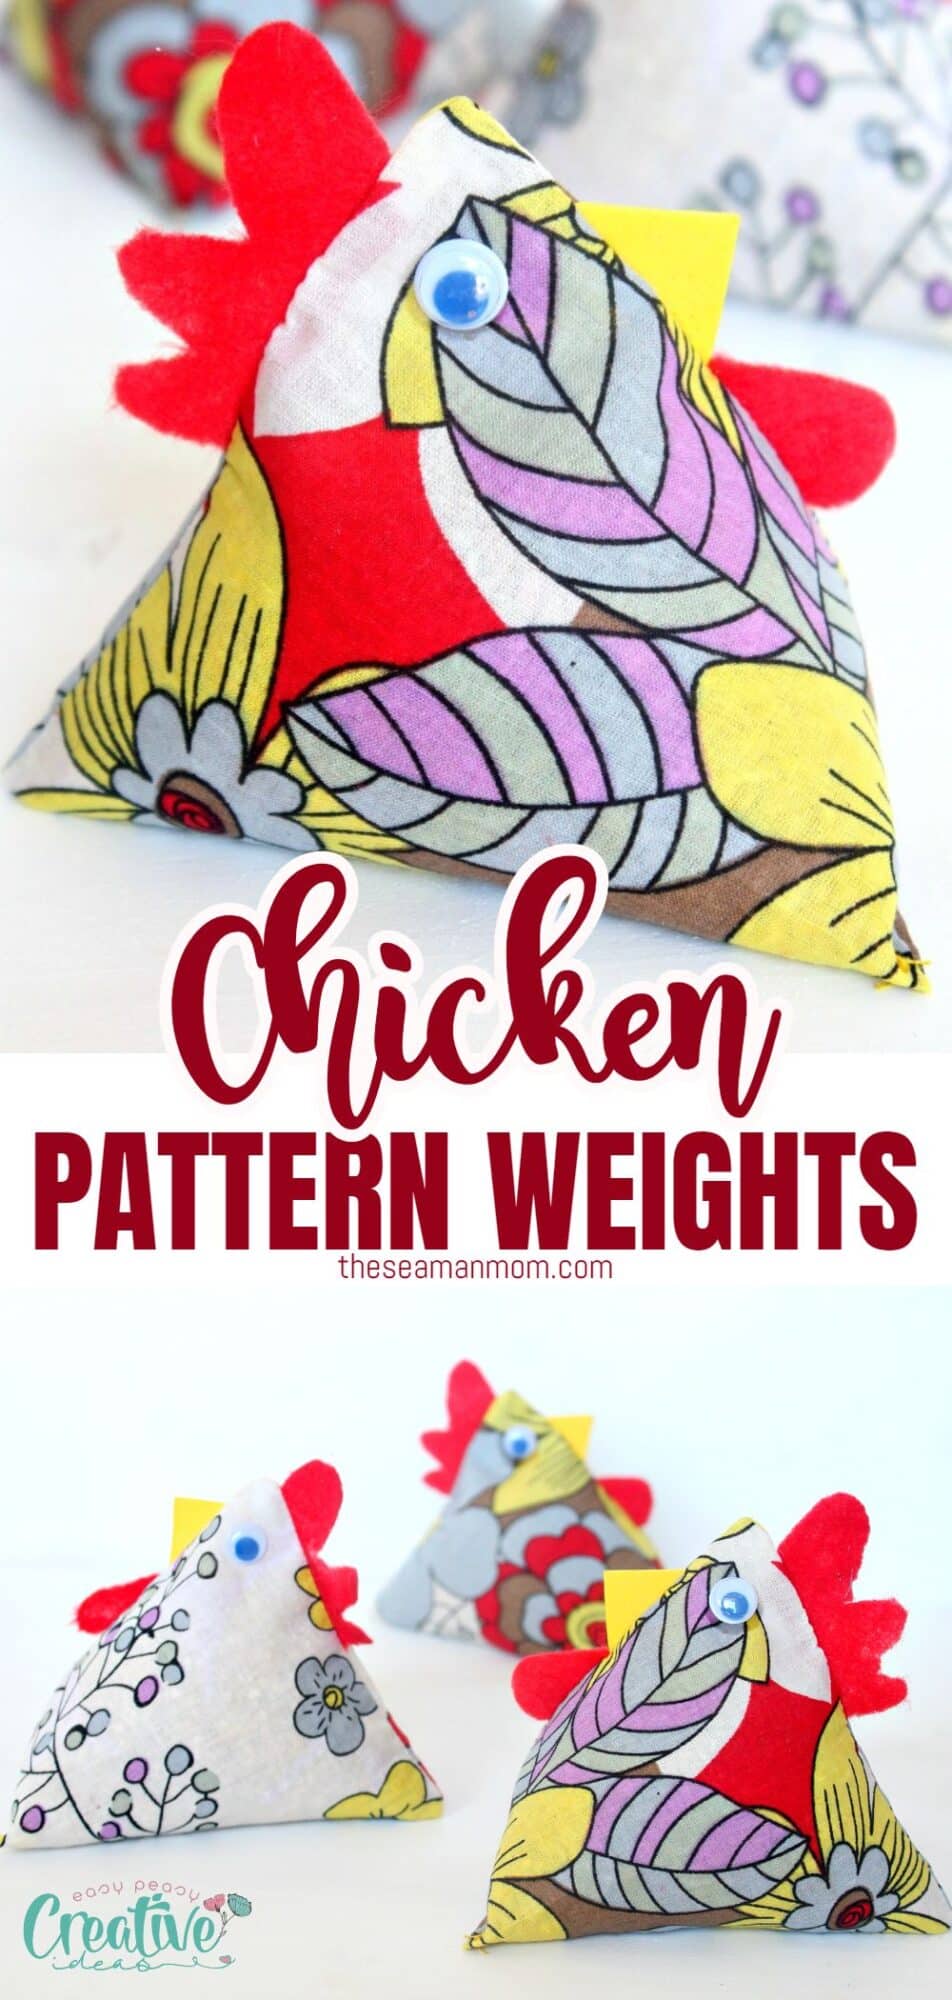 Chicken pattern weights